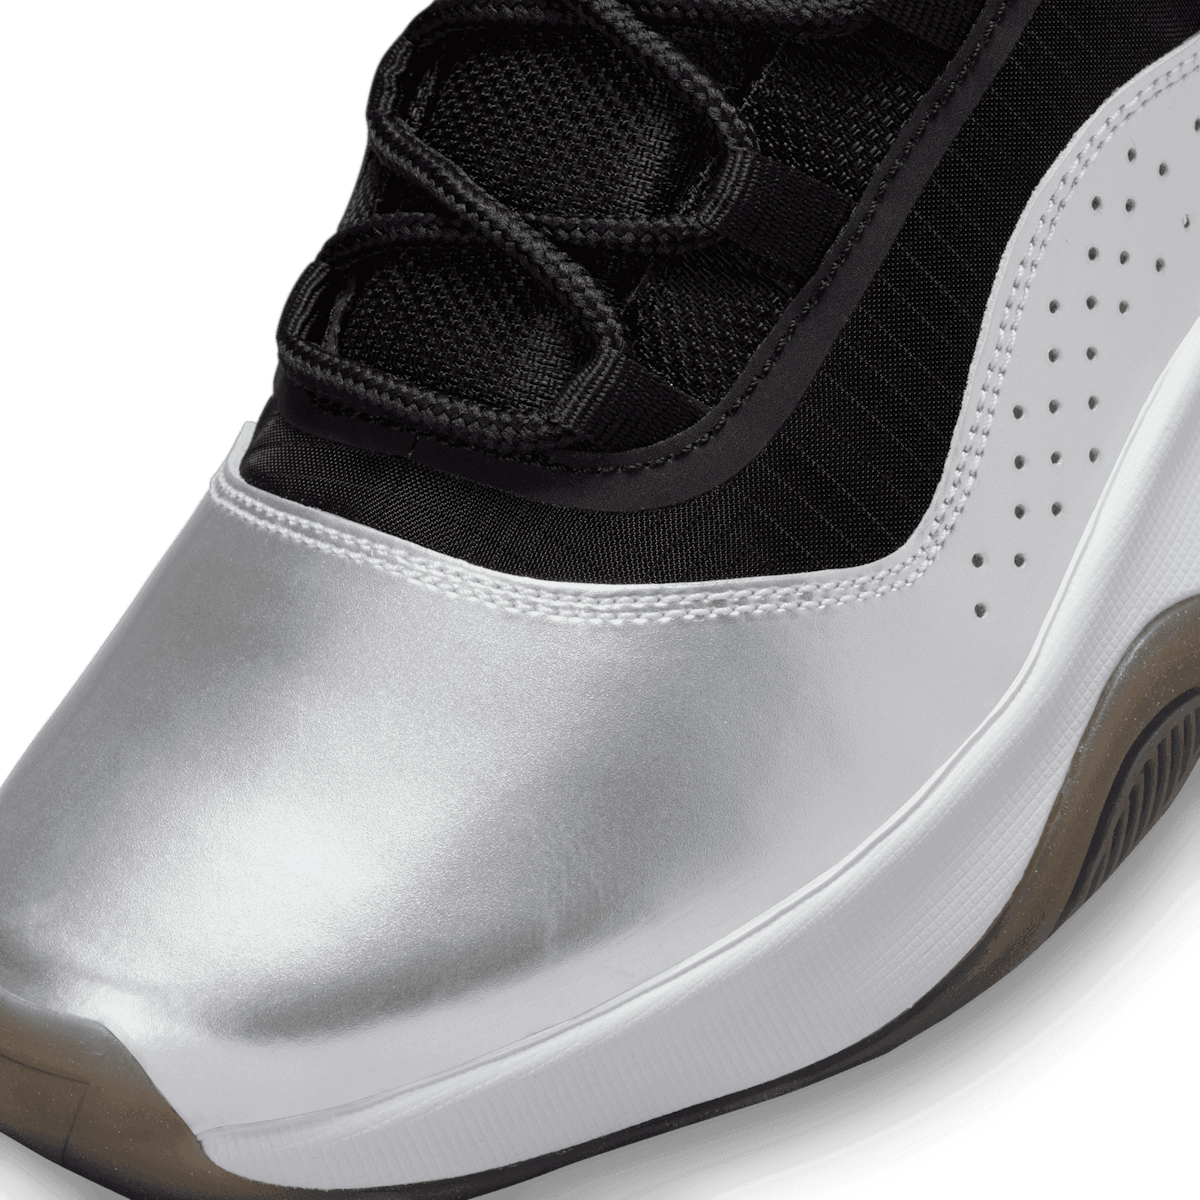 Air Jordan 11 CMFT Low Shoes in Black Angle 4